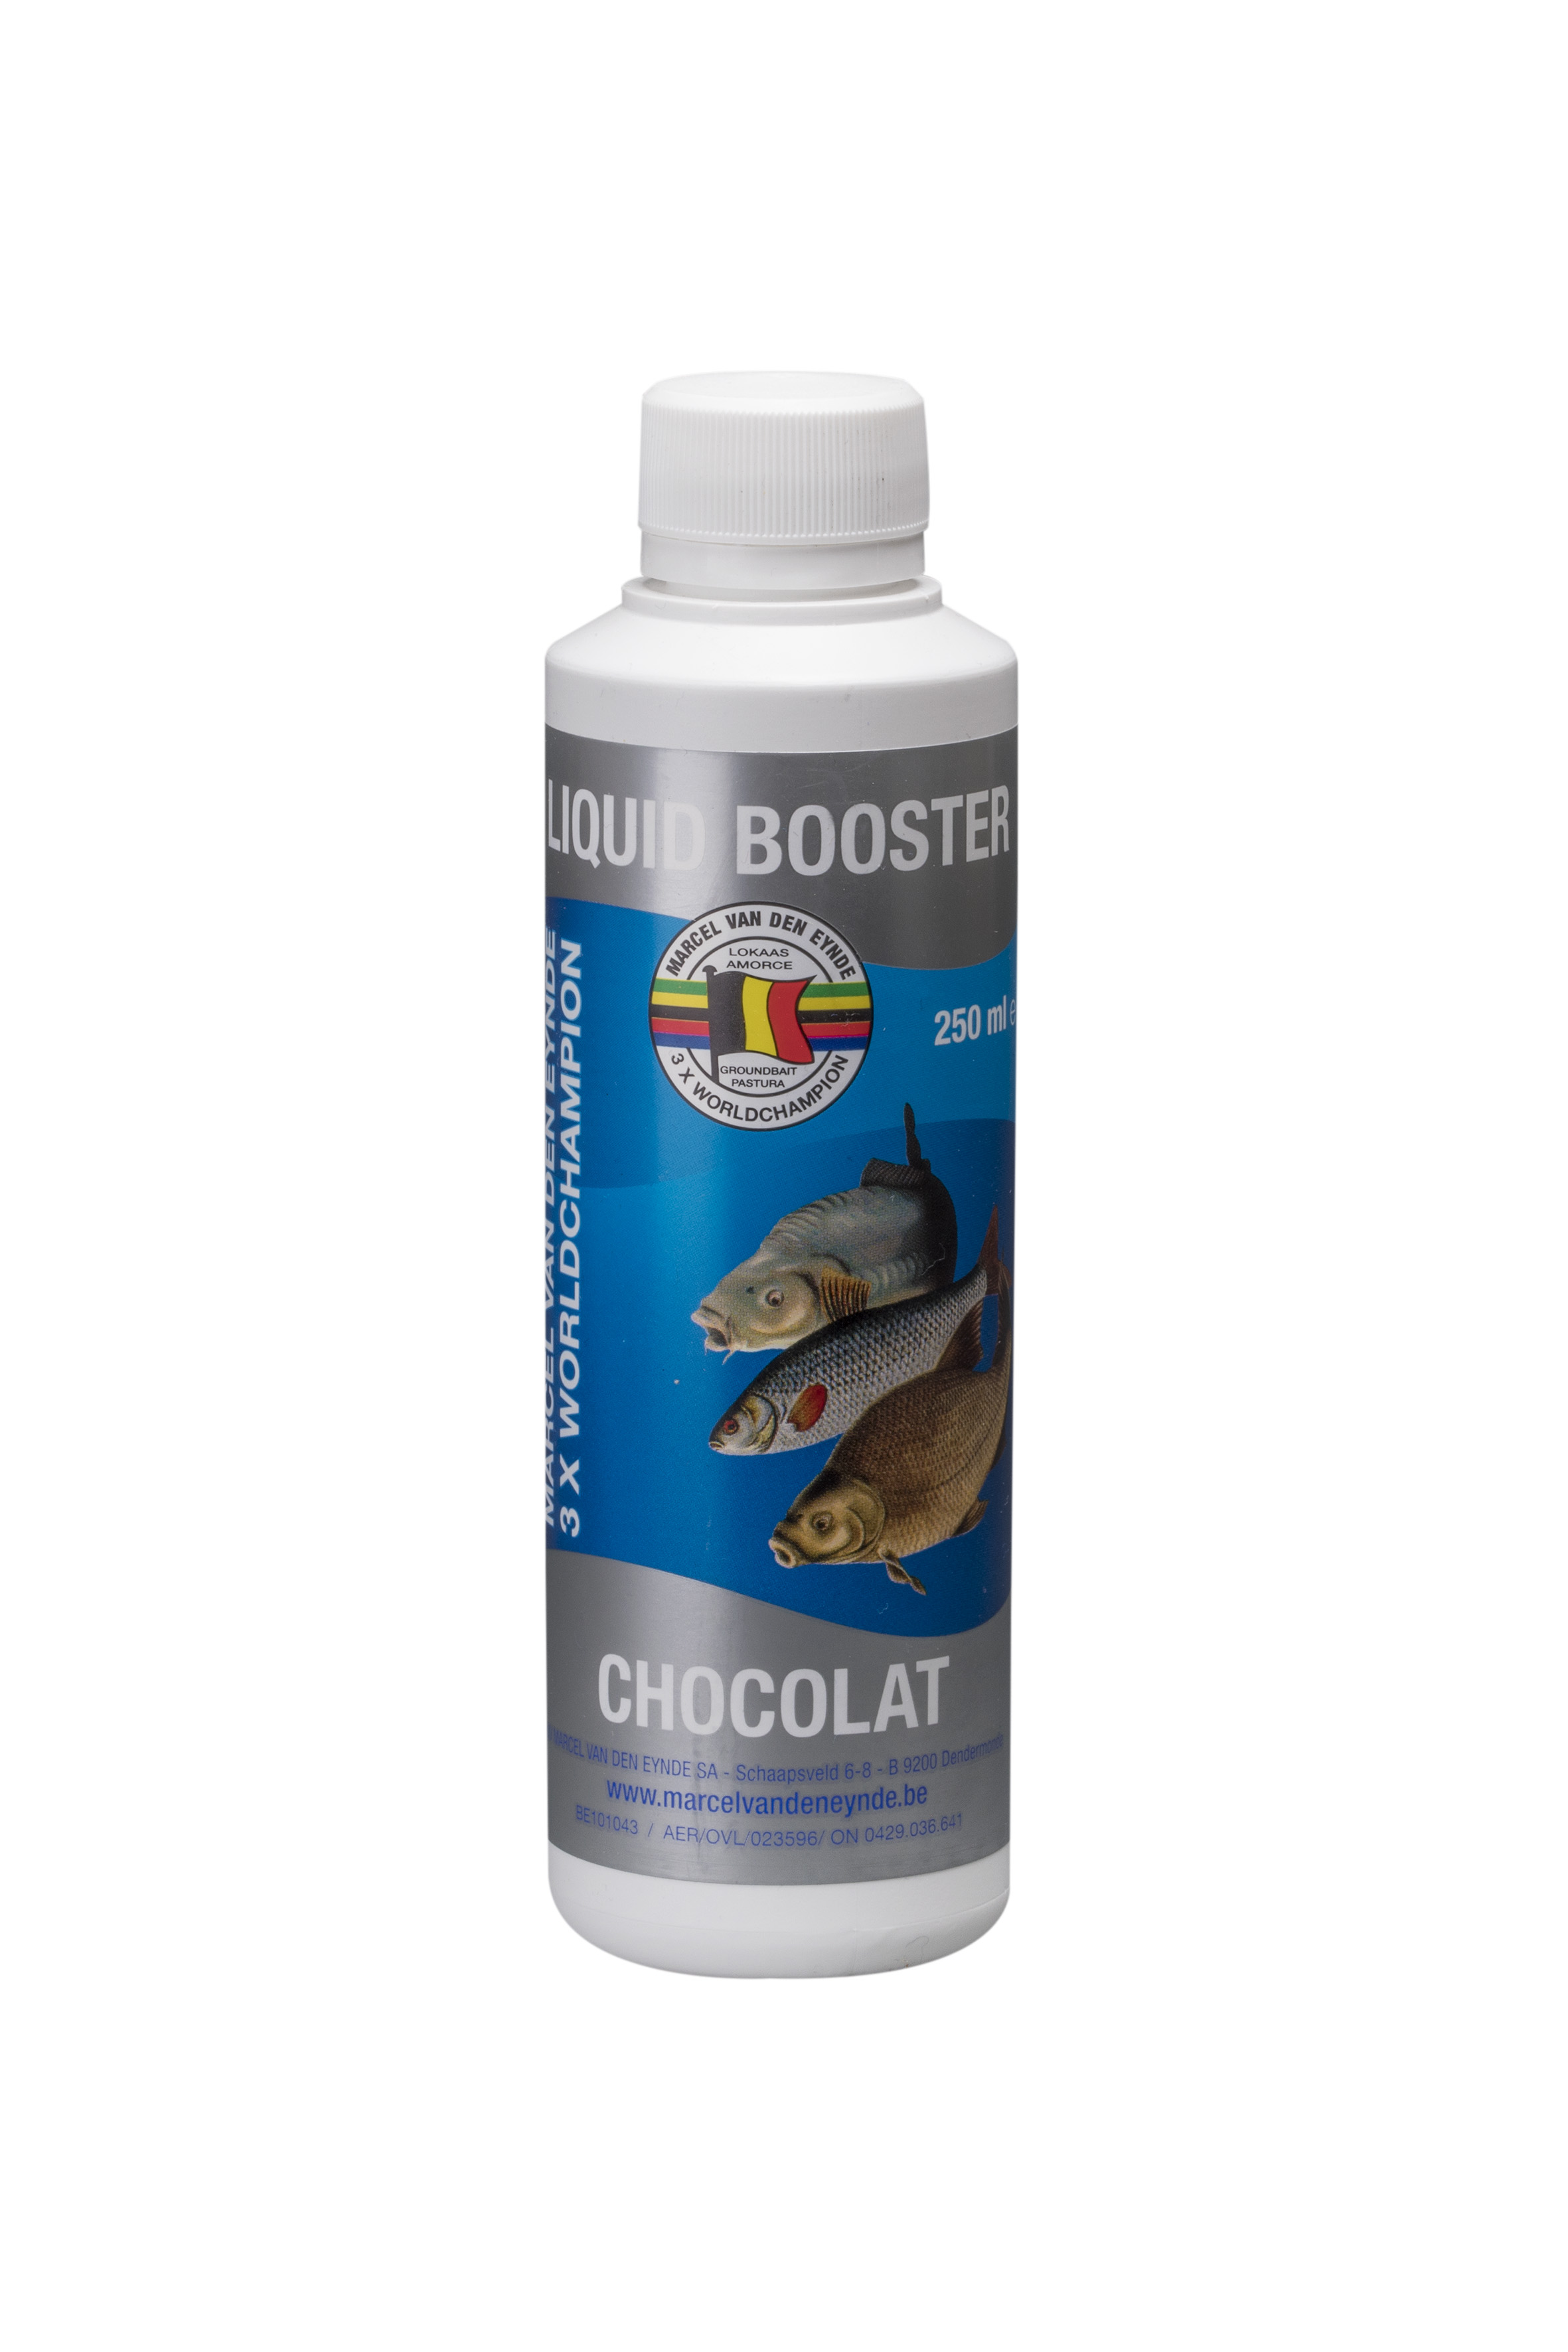 VDE Liquid Booster Chocolate 250 ml (Čokolada) -  Ime tečnog pojačivača govori sve, poboljšaće ukus i miris vašeg mamca. Koristili smo različite sastojke kako bismo napravili ukusan proizvod koji se može koristiti u mamcima, peletima i česticama. Tečni pojačivači su mnogo intenzivniji od našeg asortimana tekućih aroma, zato preporučujemo upotrebu 125 ml za 4 kg mamaca. Cijena: 12.50 BAM